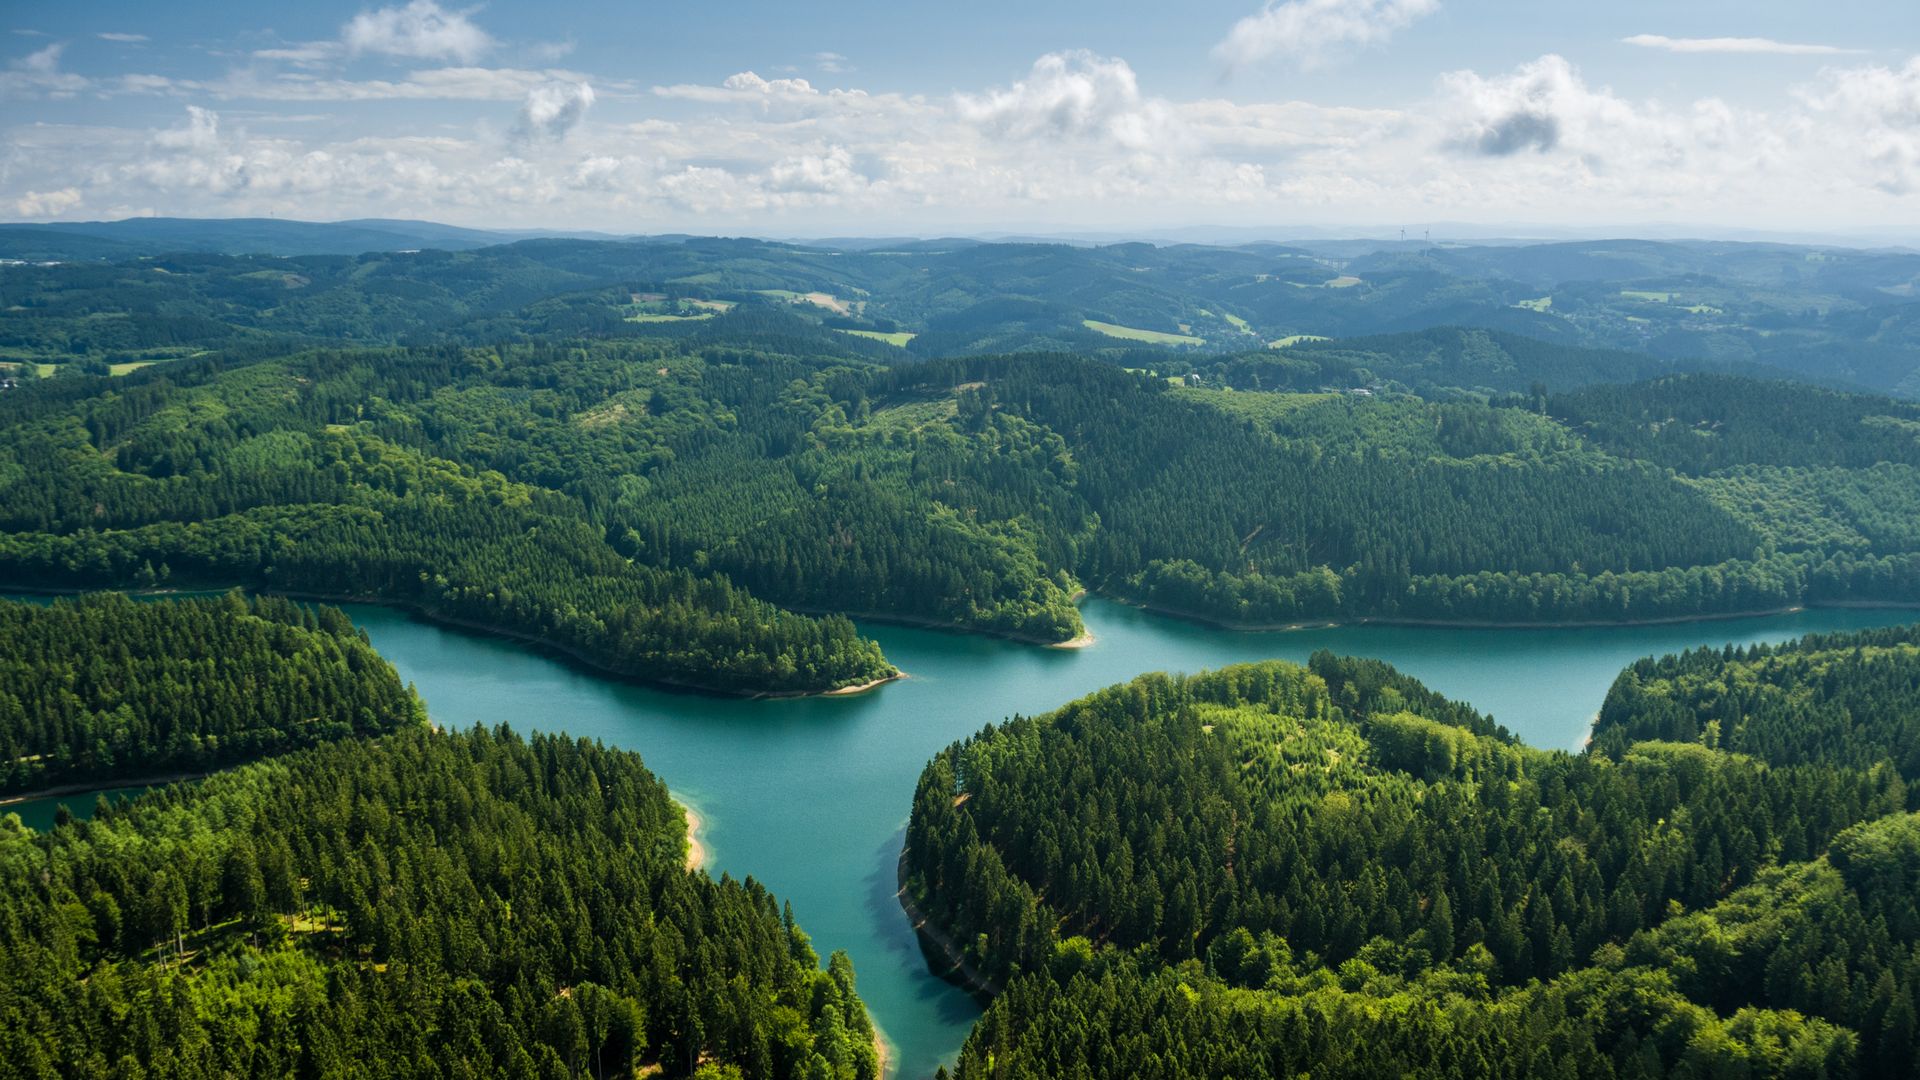 Luftbild der Genkeltalsperre mit umliegenden Wäldern